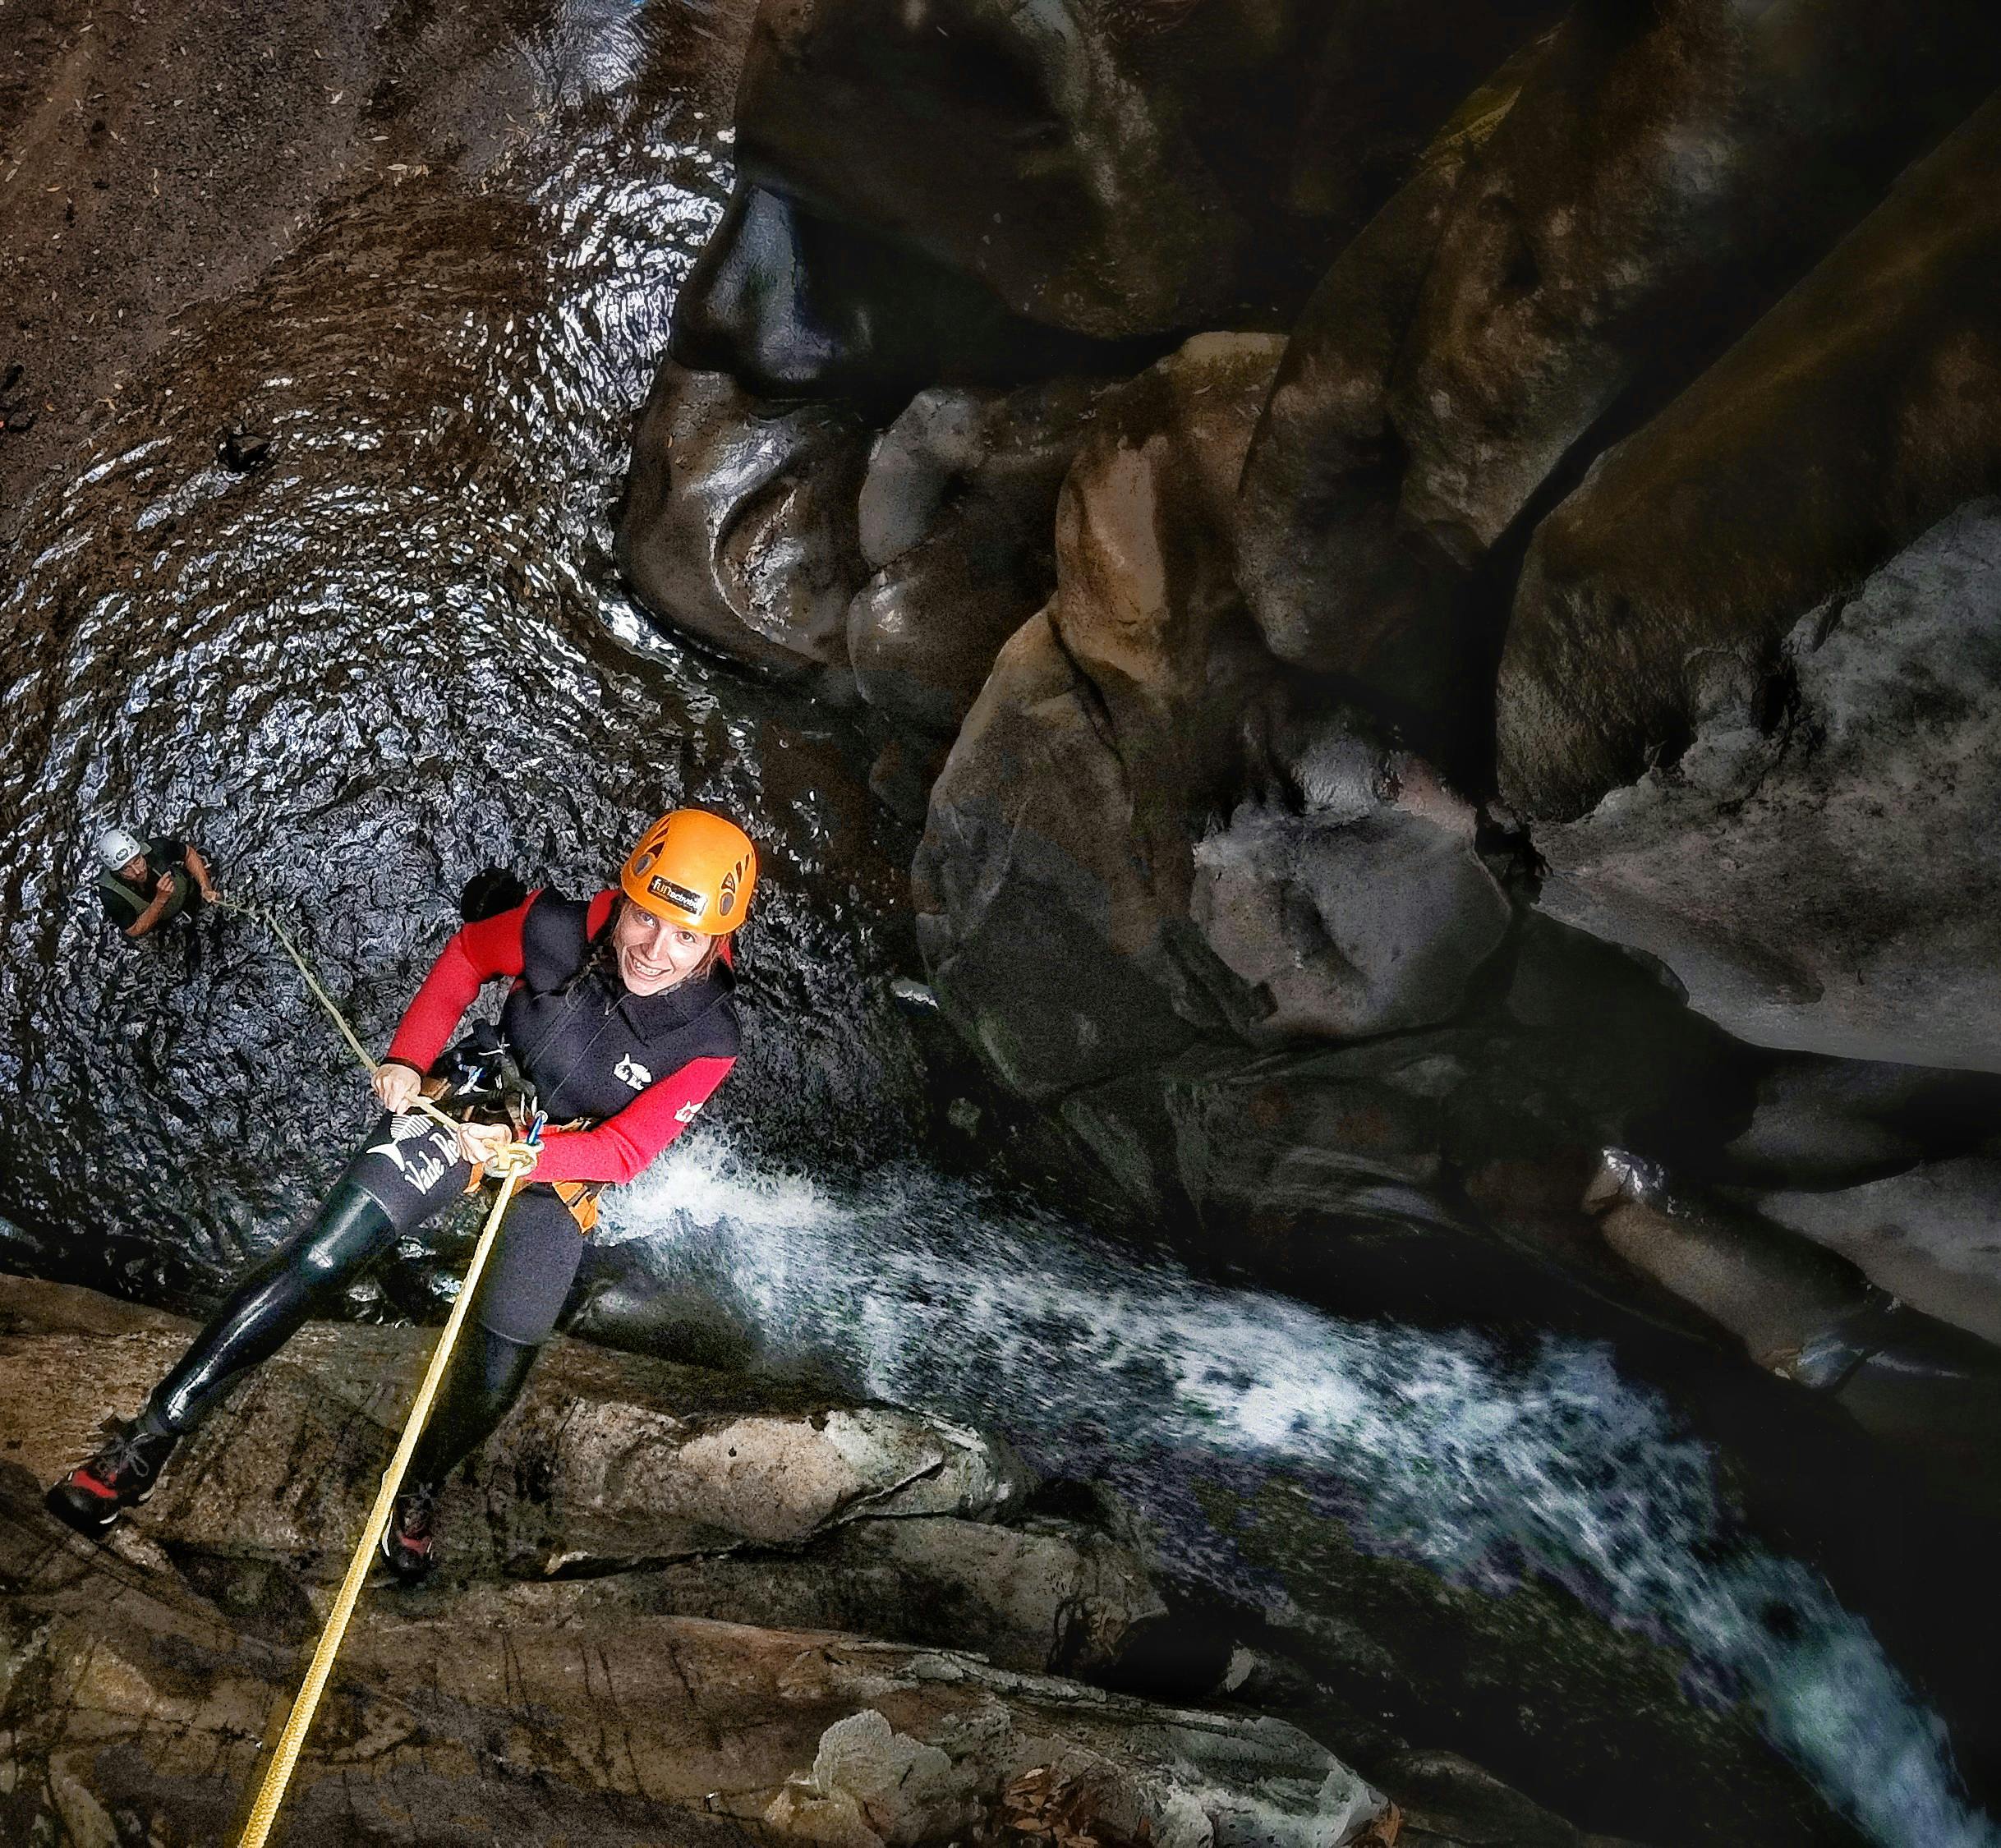 Wrażenia z kanioningu w wodospadzie Salto do Cabrito